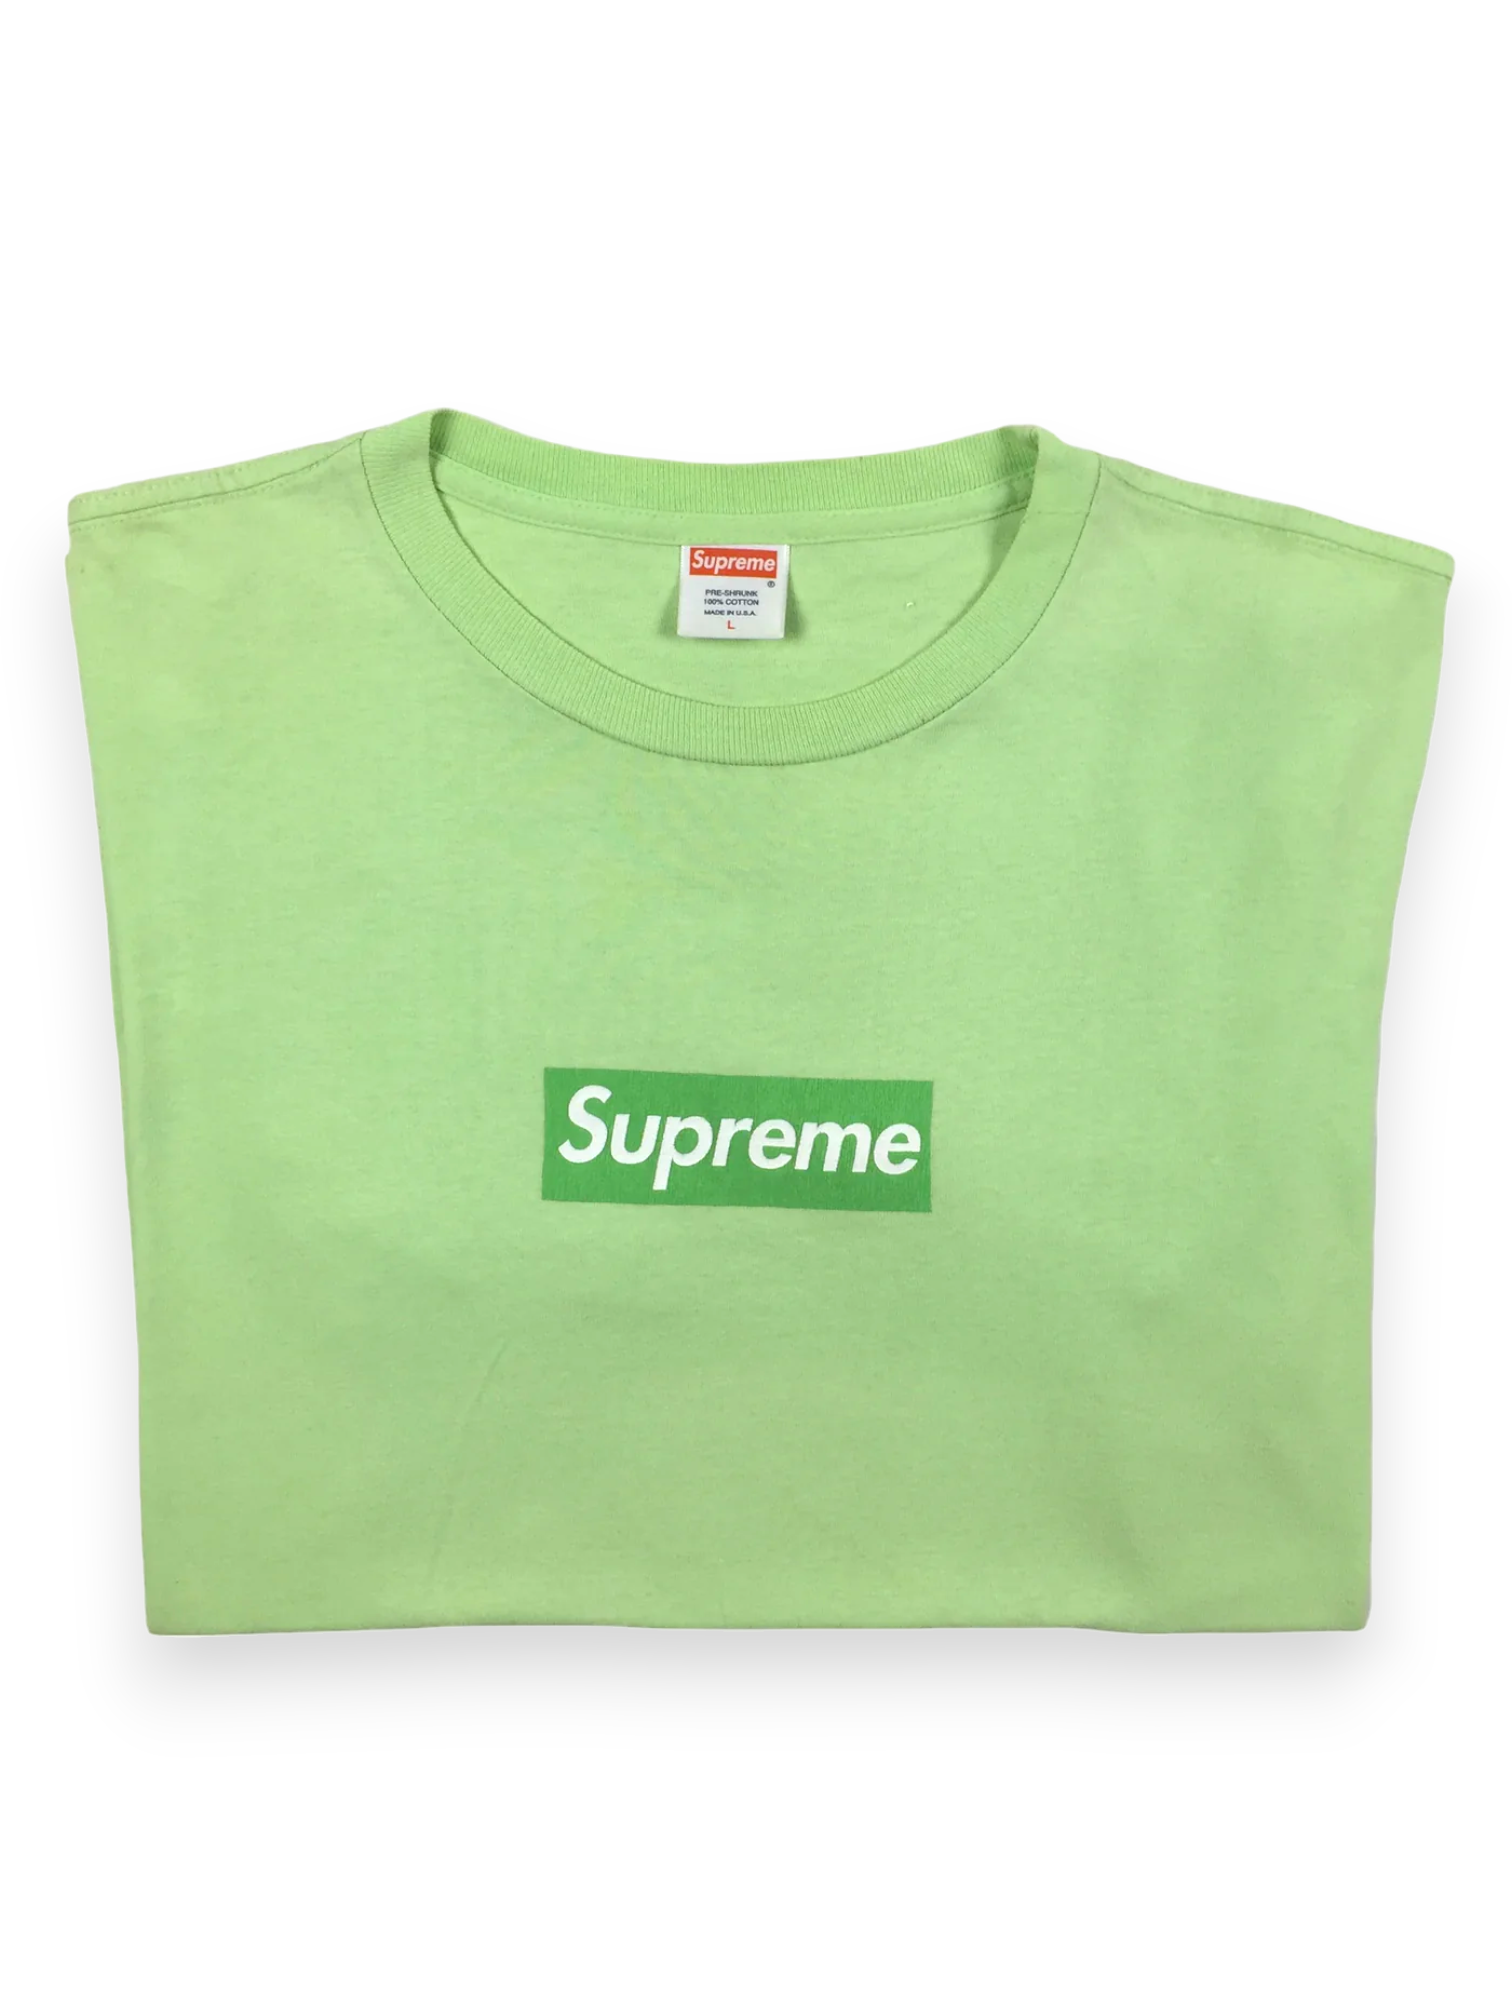 2007 Supreme Lime Green Box Logo Tee